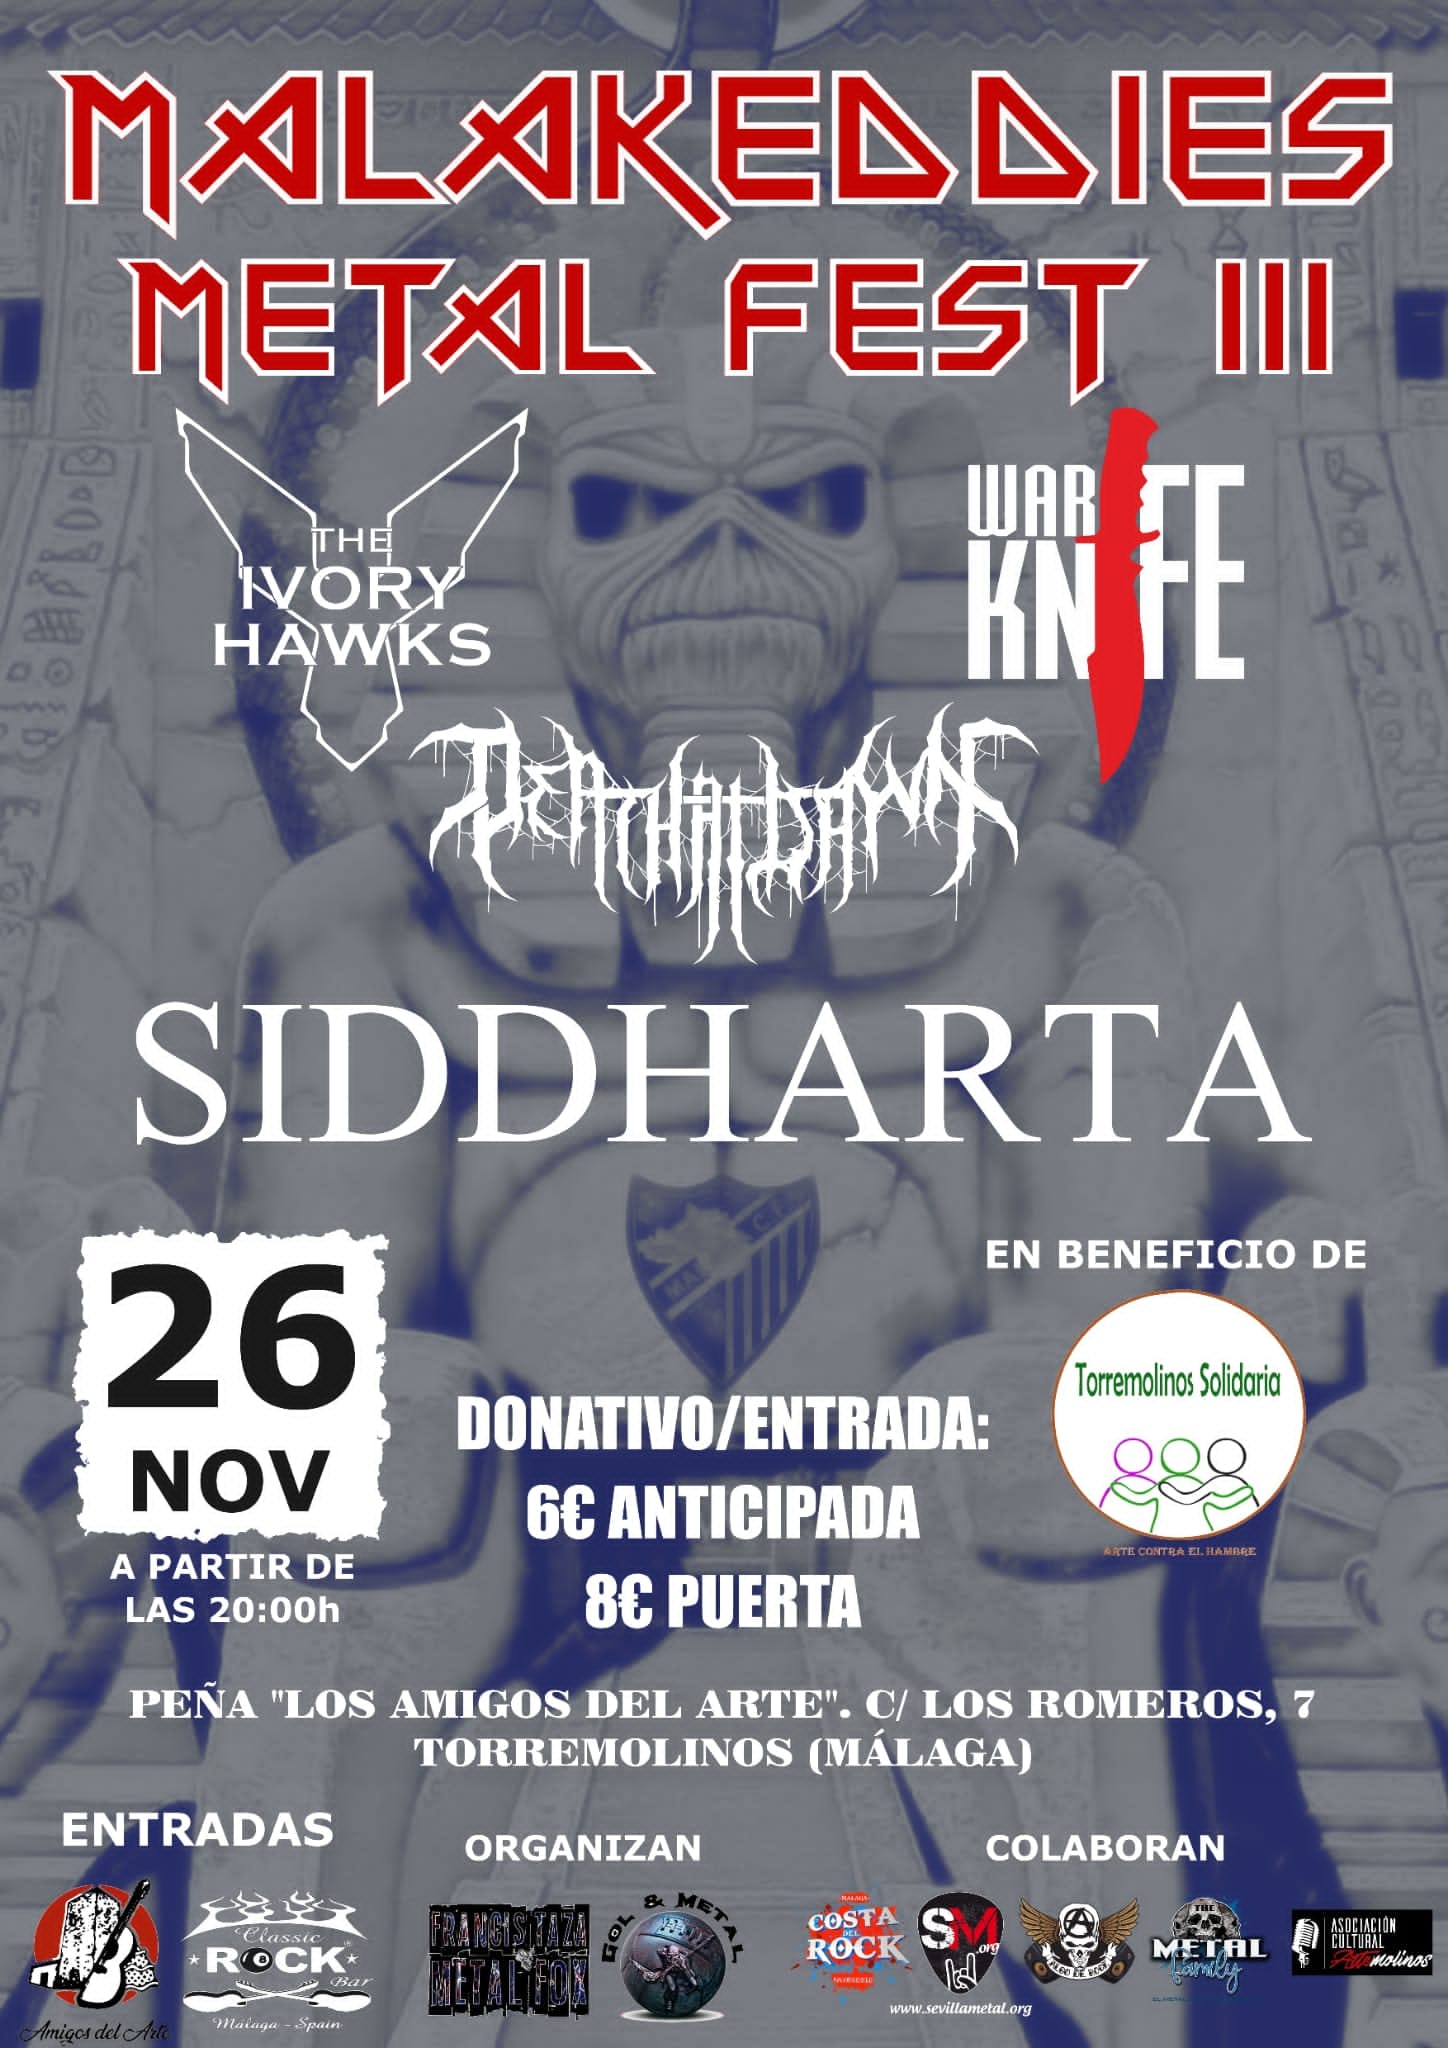 Malakeddies Metal Fest III el 26 de noviembre en Torremolinos